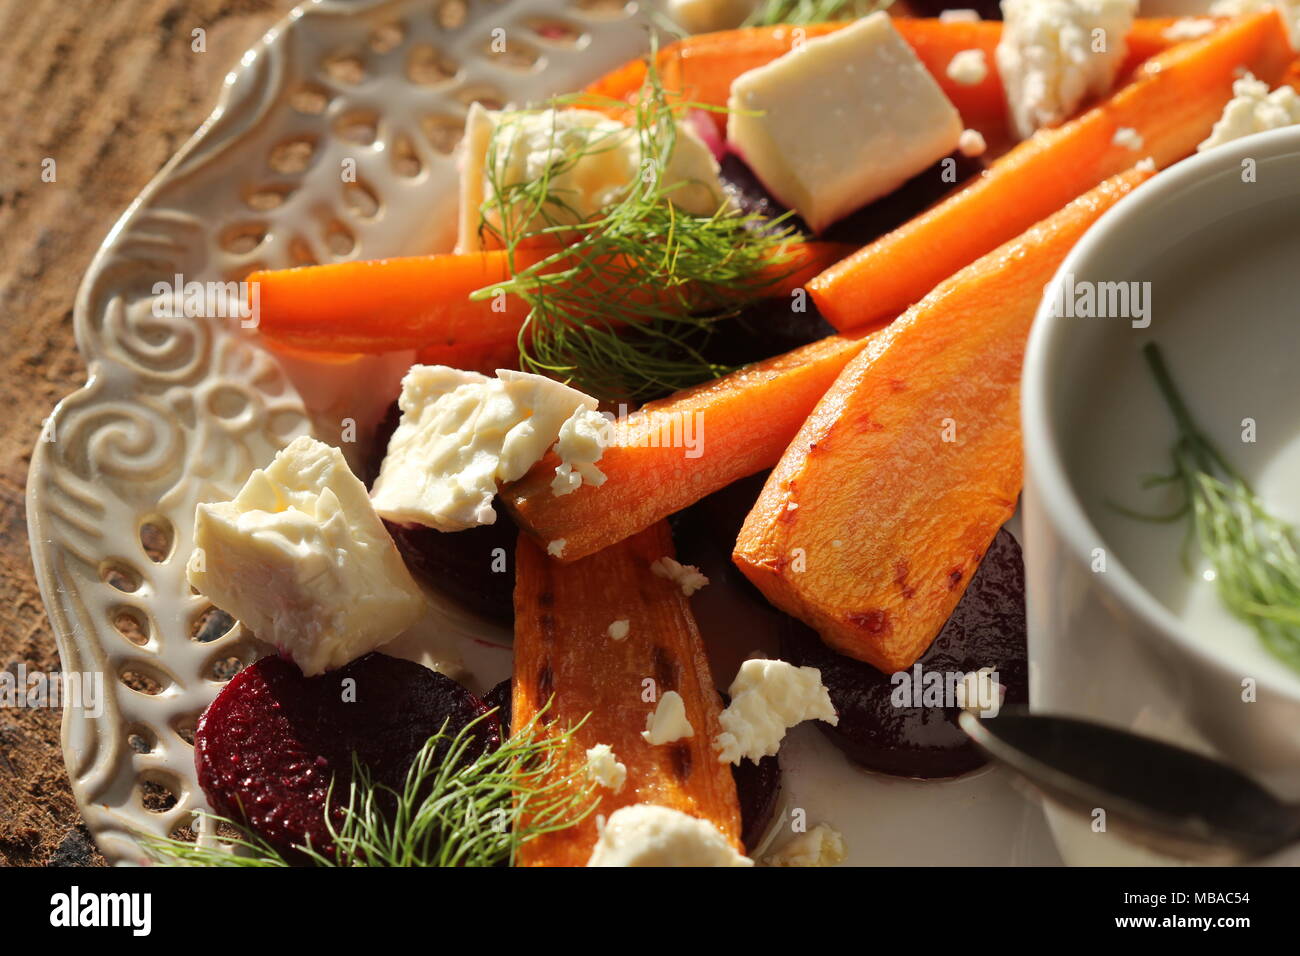 Una sana grigliate di barbabietole e carote Insalata con formaggio feta, finocchio e lo yogurt greco in piccole ciotole in vetro sulla tavola in legno rustico, vista dall'alto Foto Stock